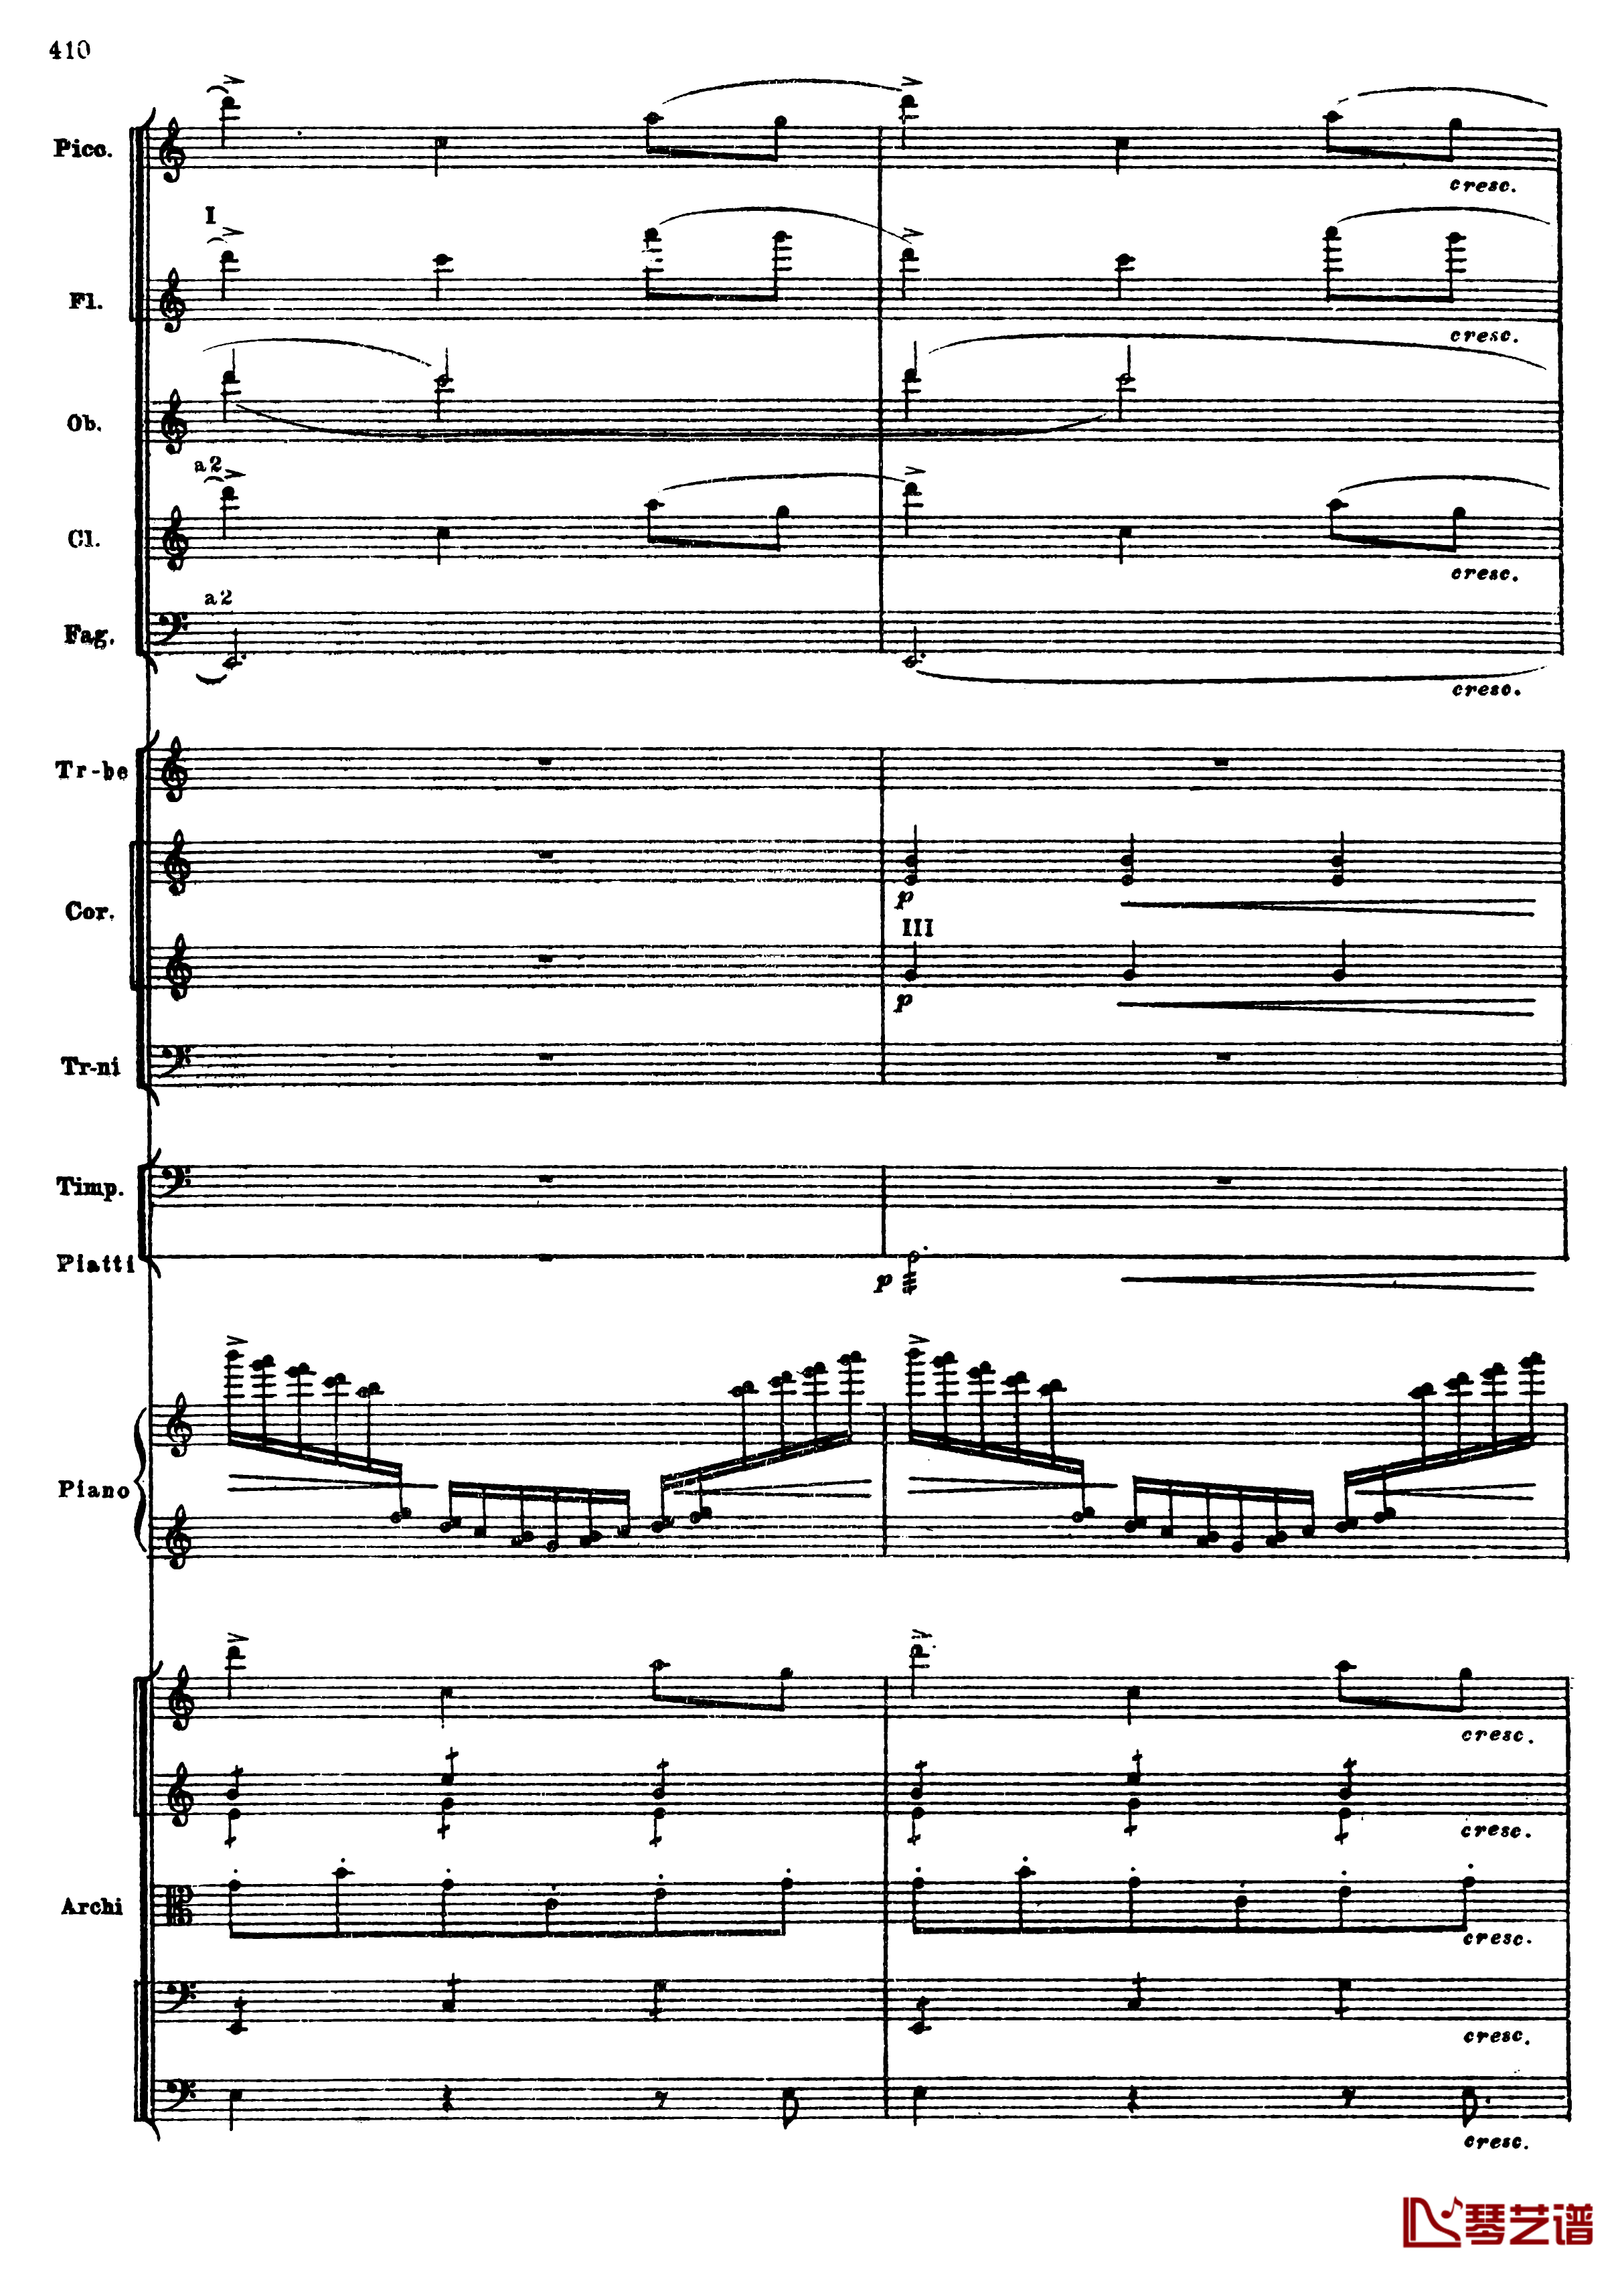 普罗科菲耶夫第三钢琴协奏曲钢琴谱-总谱-普罗科非耶夫142